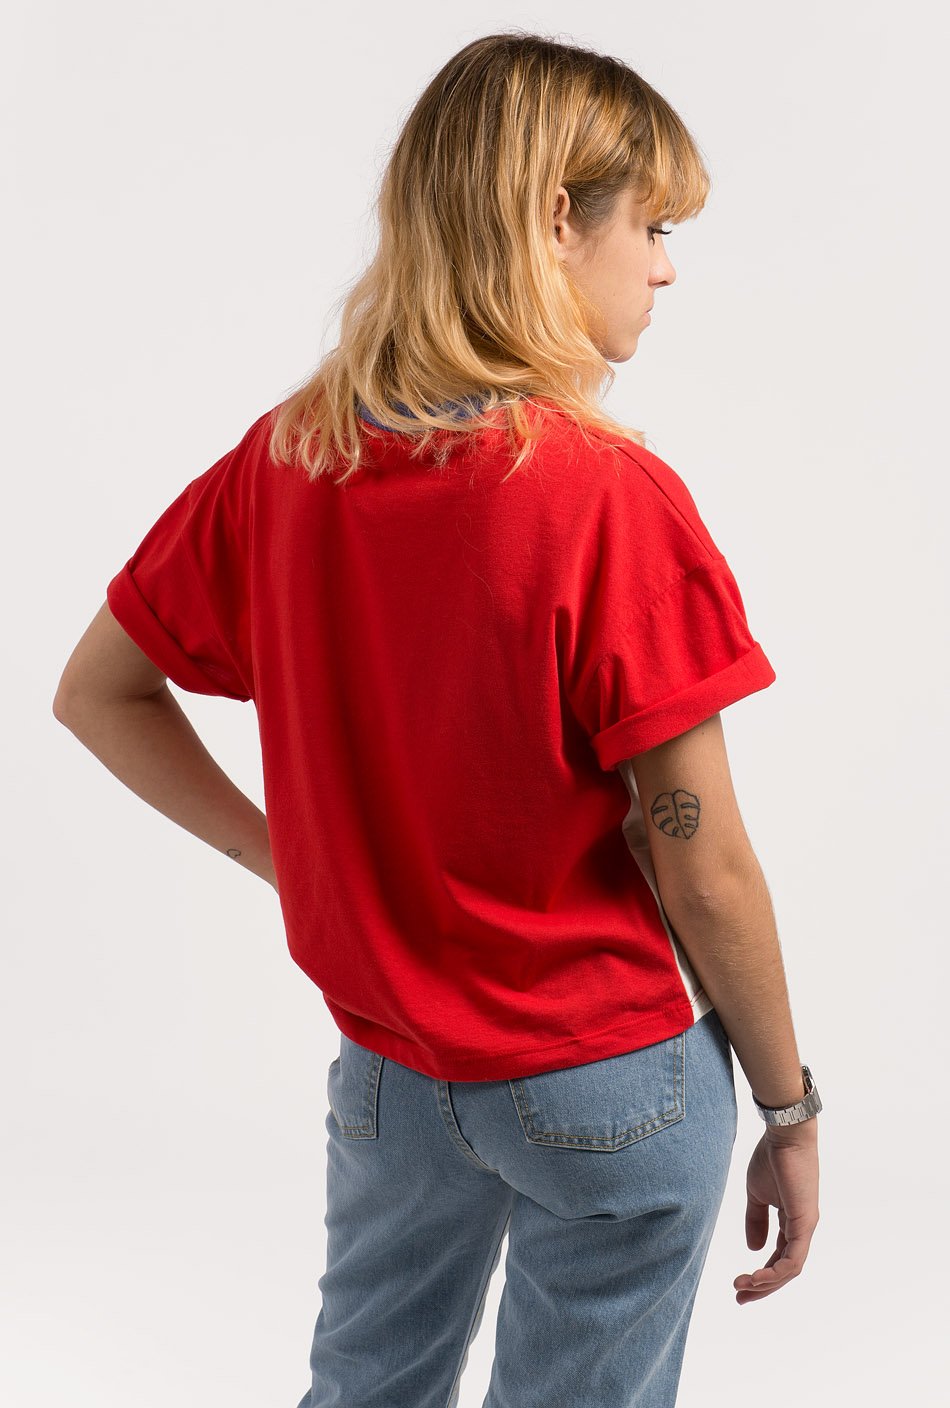 Camiseta "USA" rojo/crudo